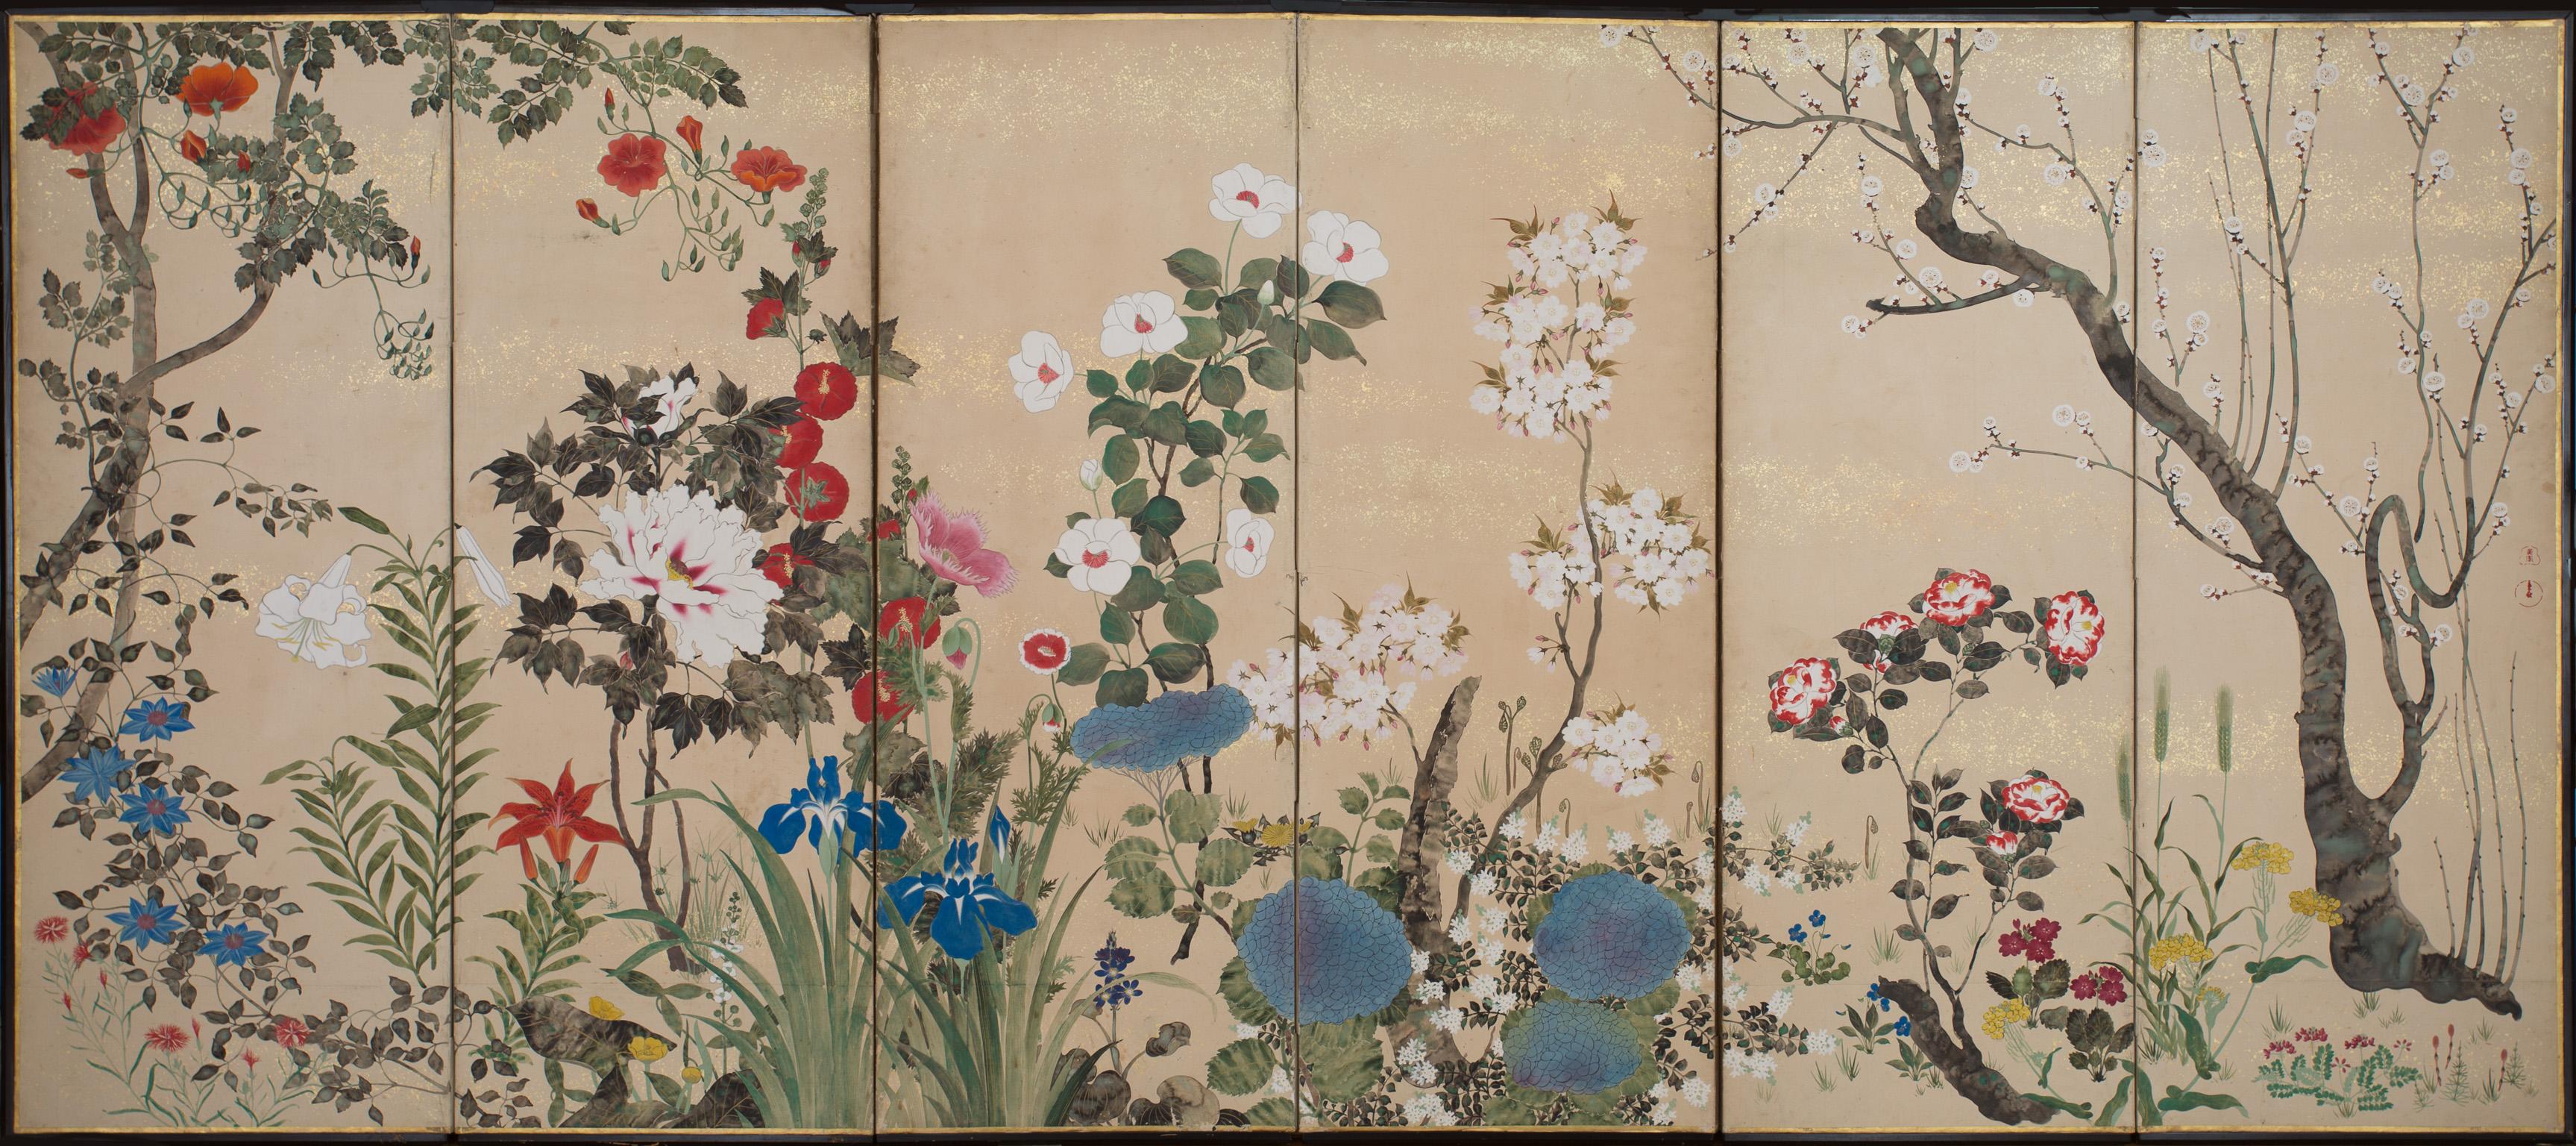 Dieses Leinwandpaar gehört zu einem Genre lyrischer Gemälde von Blumen, Gräsern und anderen Pflanzen, das um die Mitte des 17. Jahrhunderts seine Blütezeit erlebte und zu einer Spezialität des Studios Sôtatsu wurde. Tawaraya Sôtatsu, der Begründer